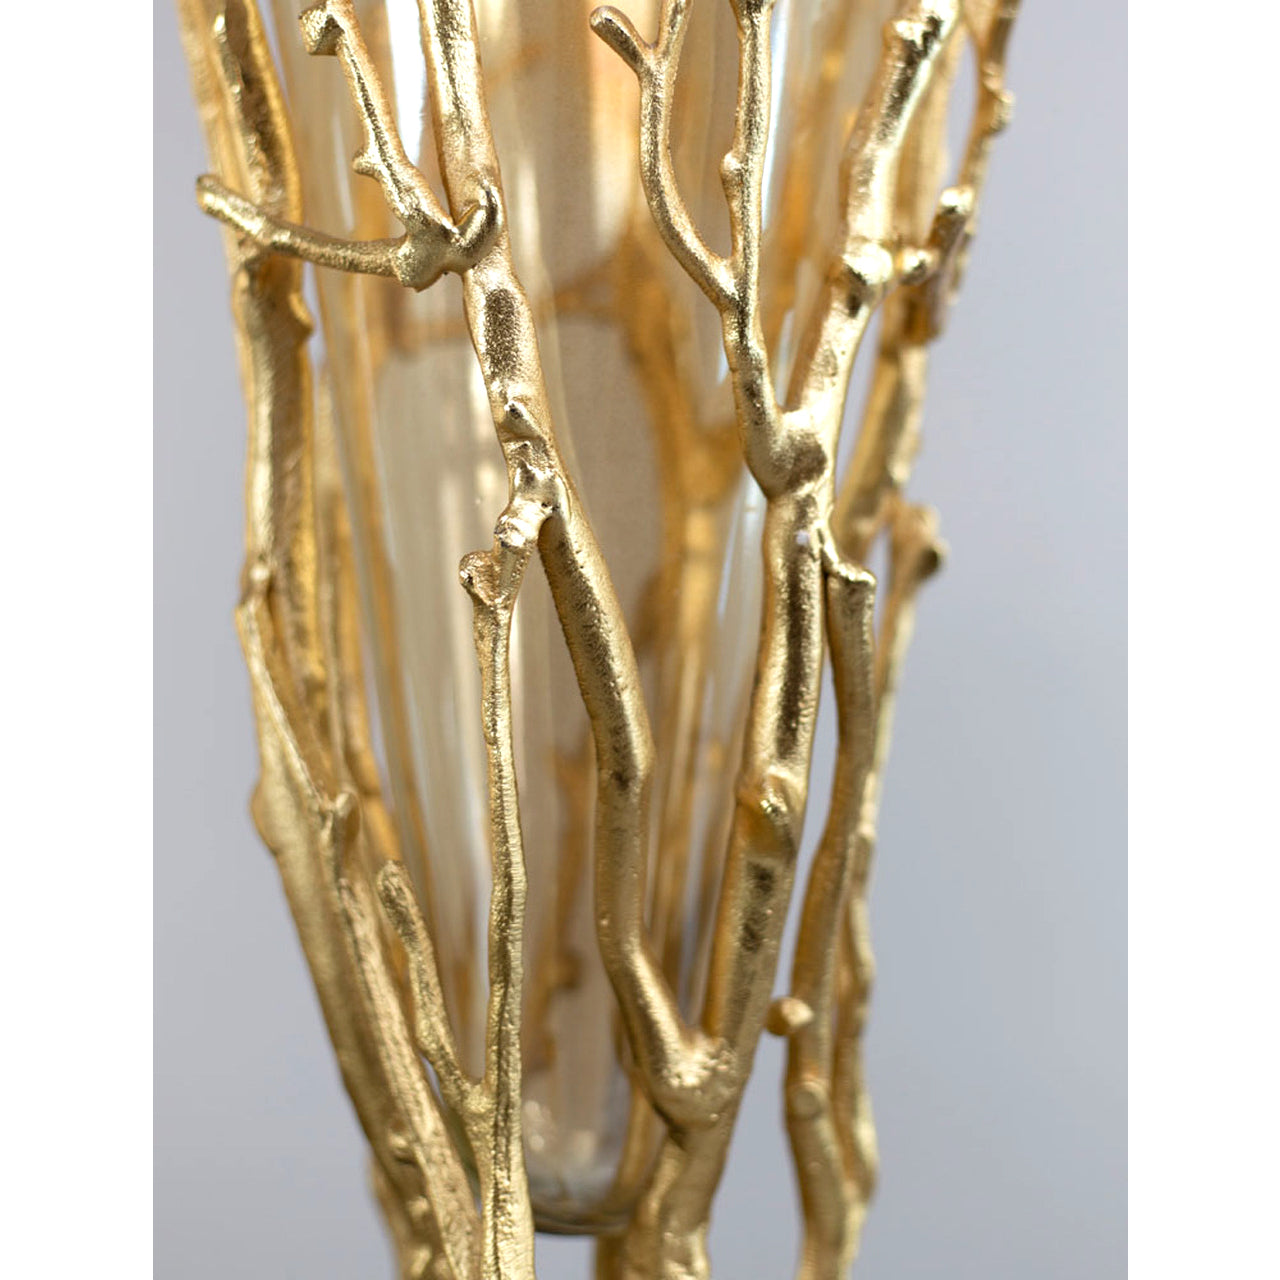 Golden Coral Glass & Metal Vase